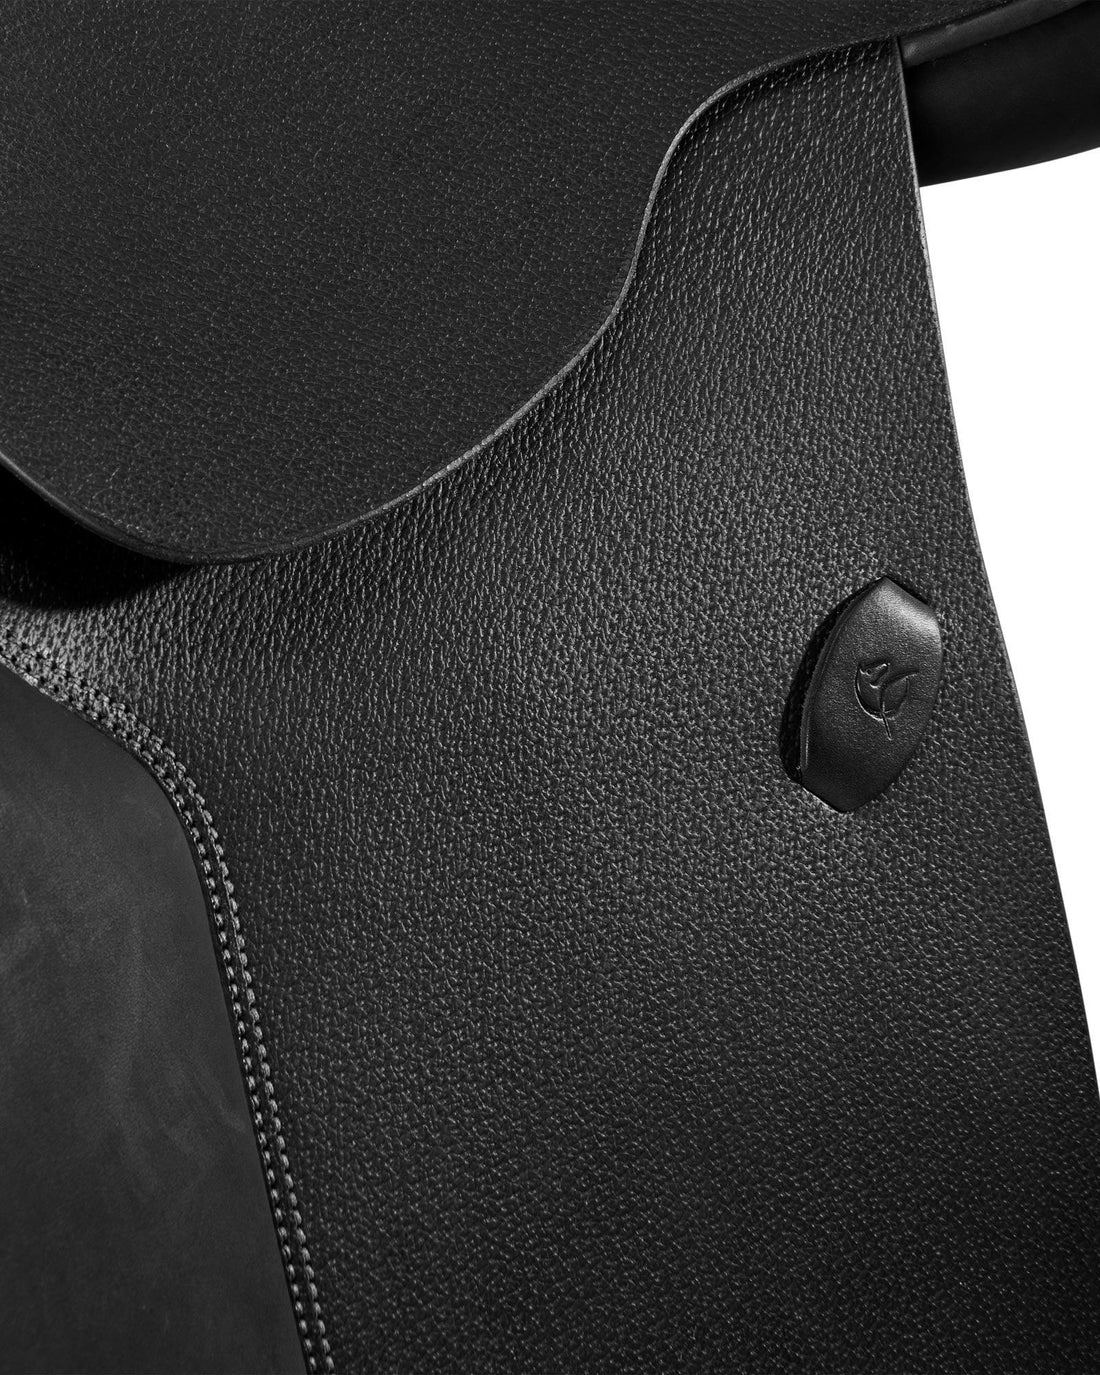 Acavallo Veneziano jumping saddle latex panels - HorseworldEU